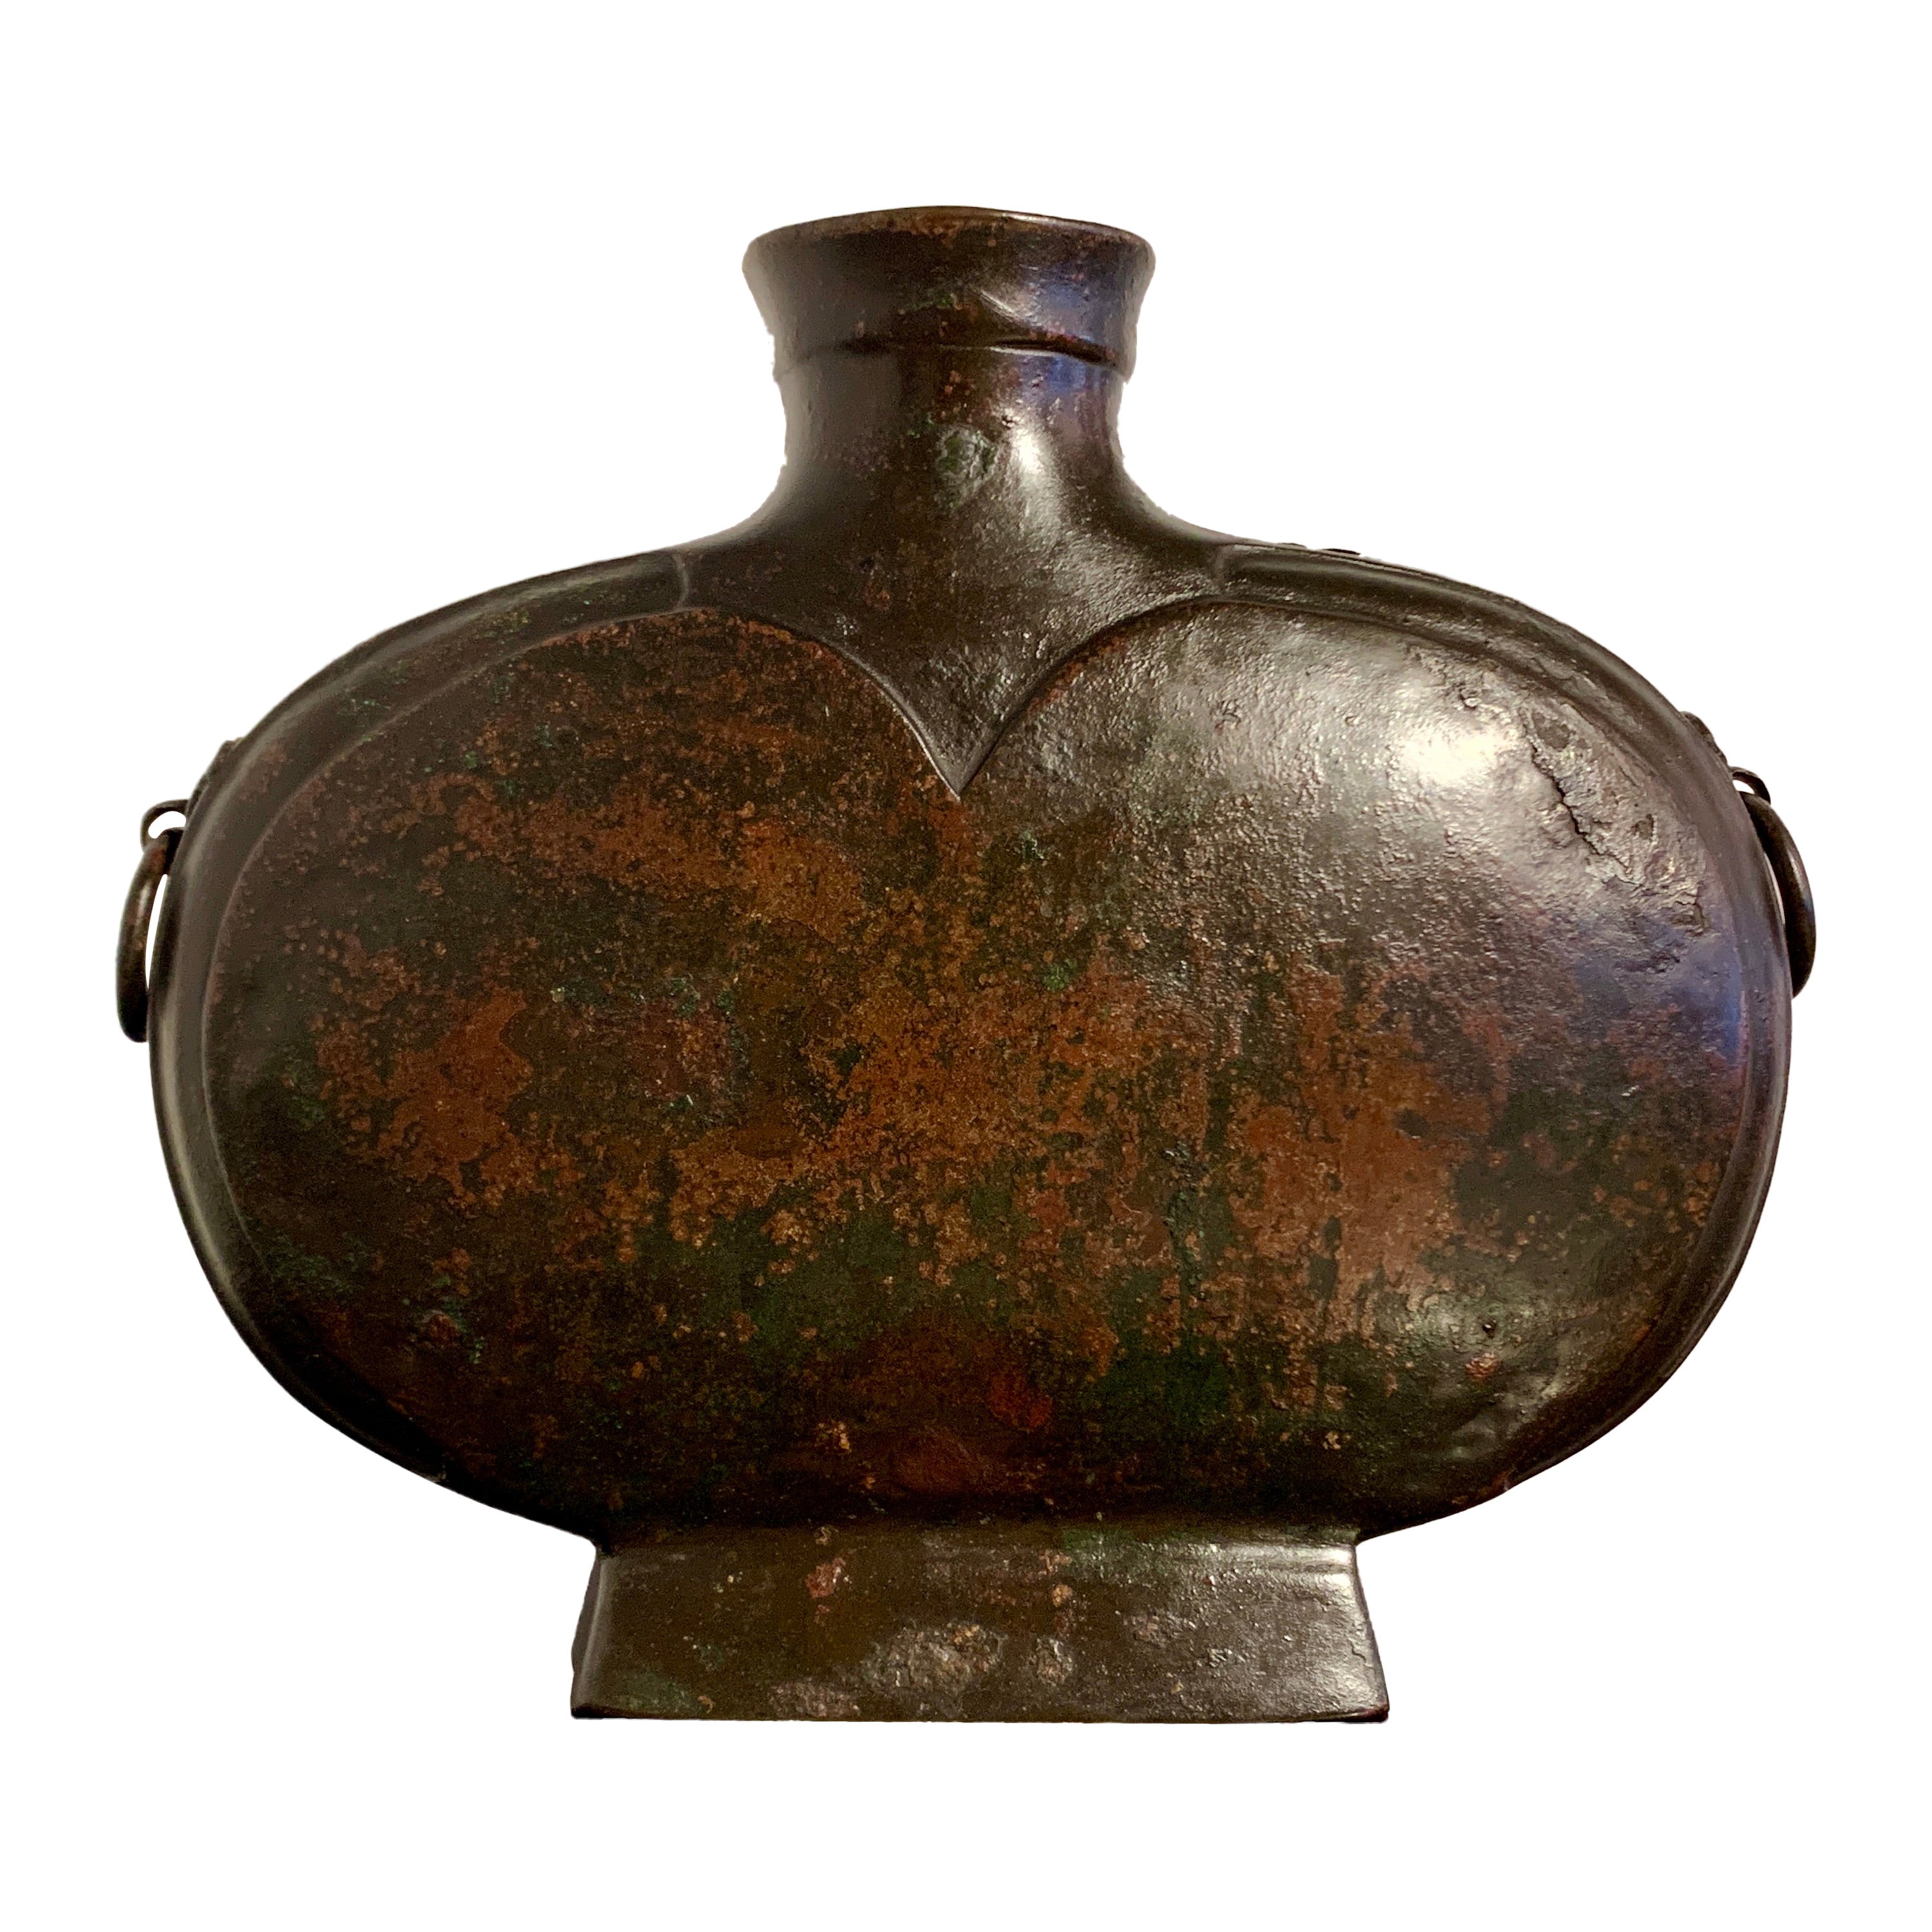 Chinesisches gewölbtes Weingefäß aus Bronze, Bianhu, Han-Dynastie, China